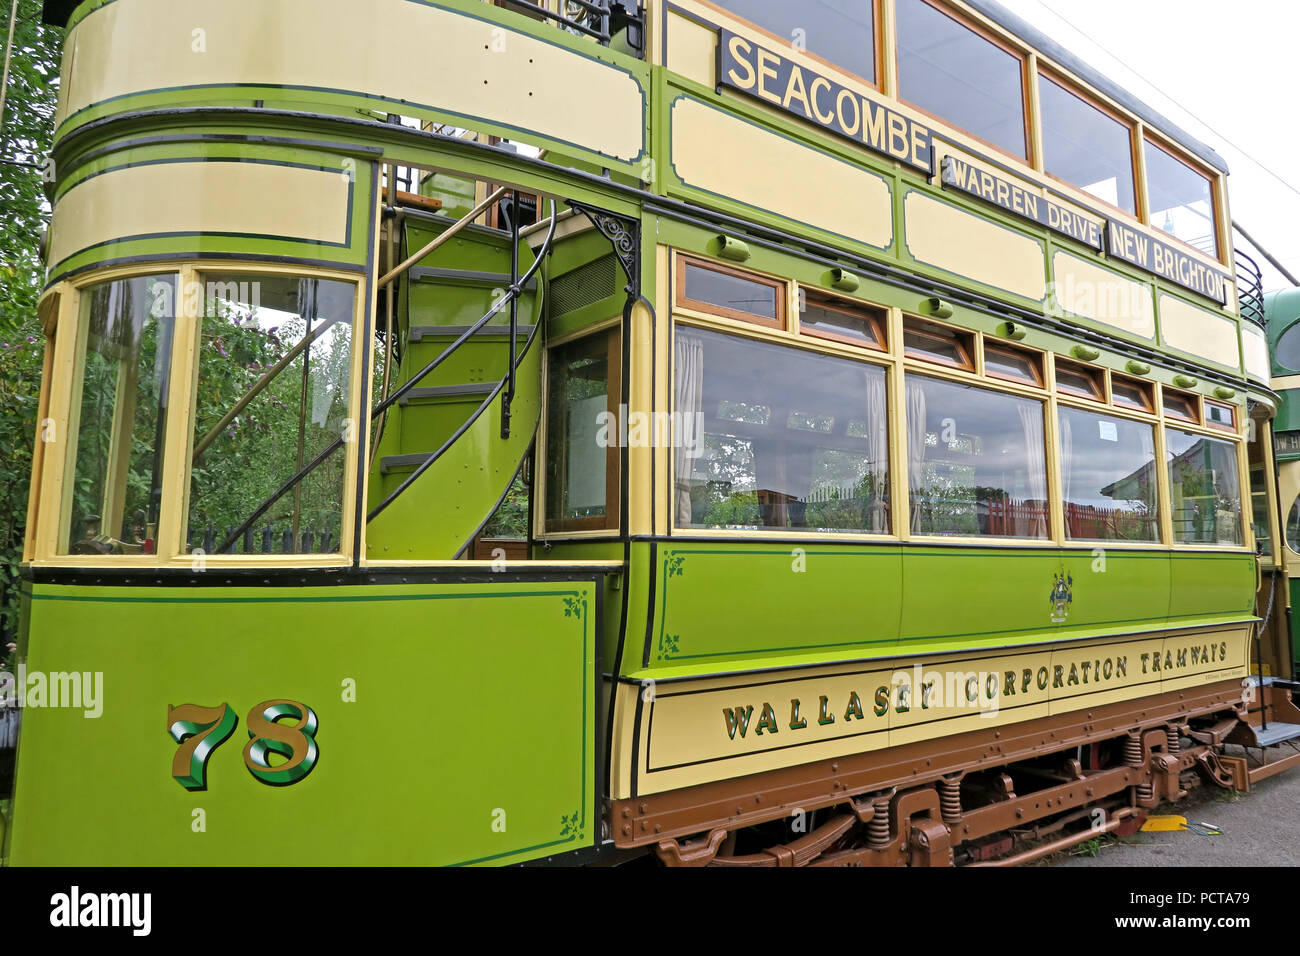 Wirral öffentliche Straßenbahn, Grün Creme 78 Seacombe Straßenbahn, Merseyside, North West England, Großbritannien Stockfoto